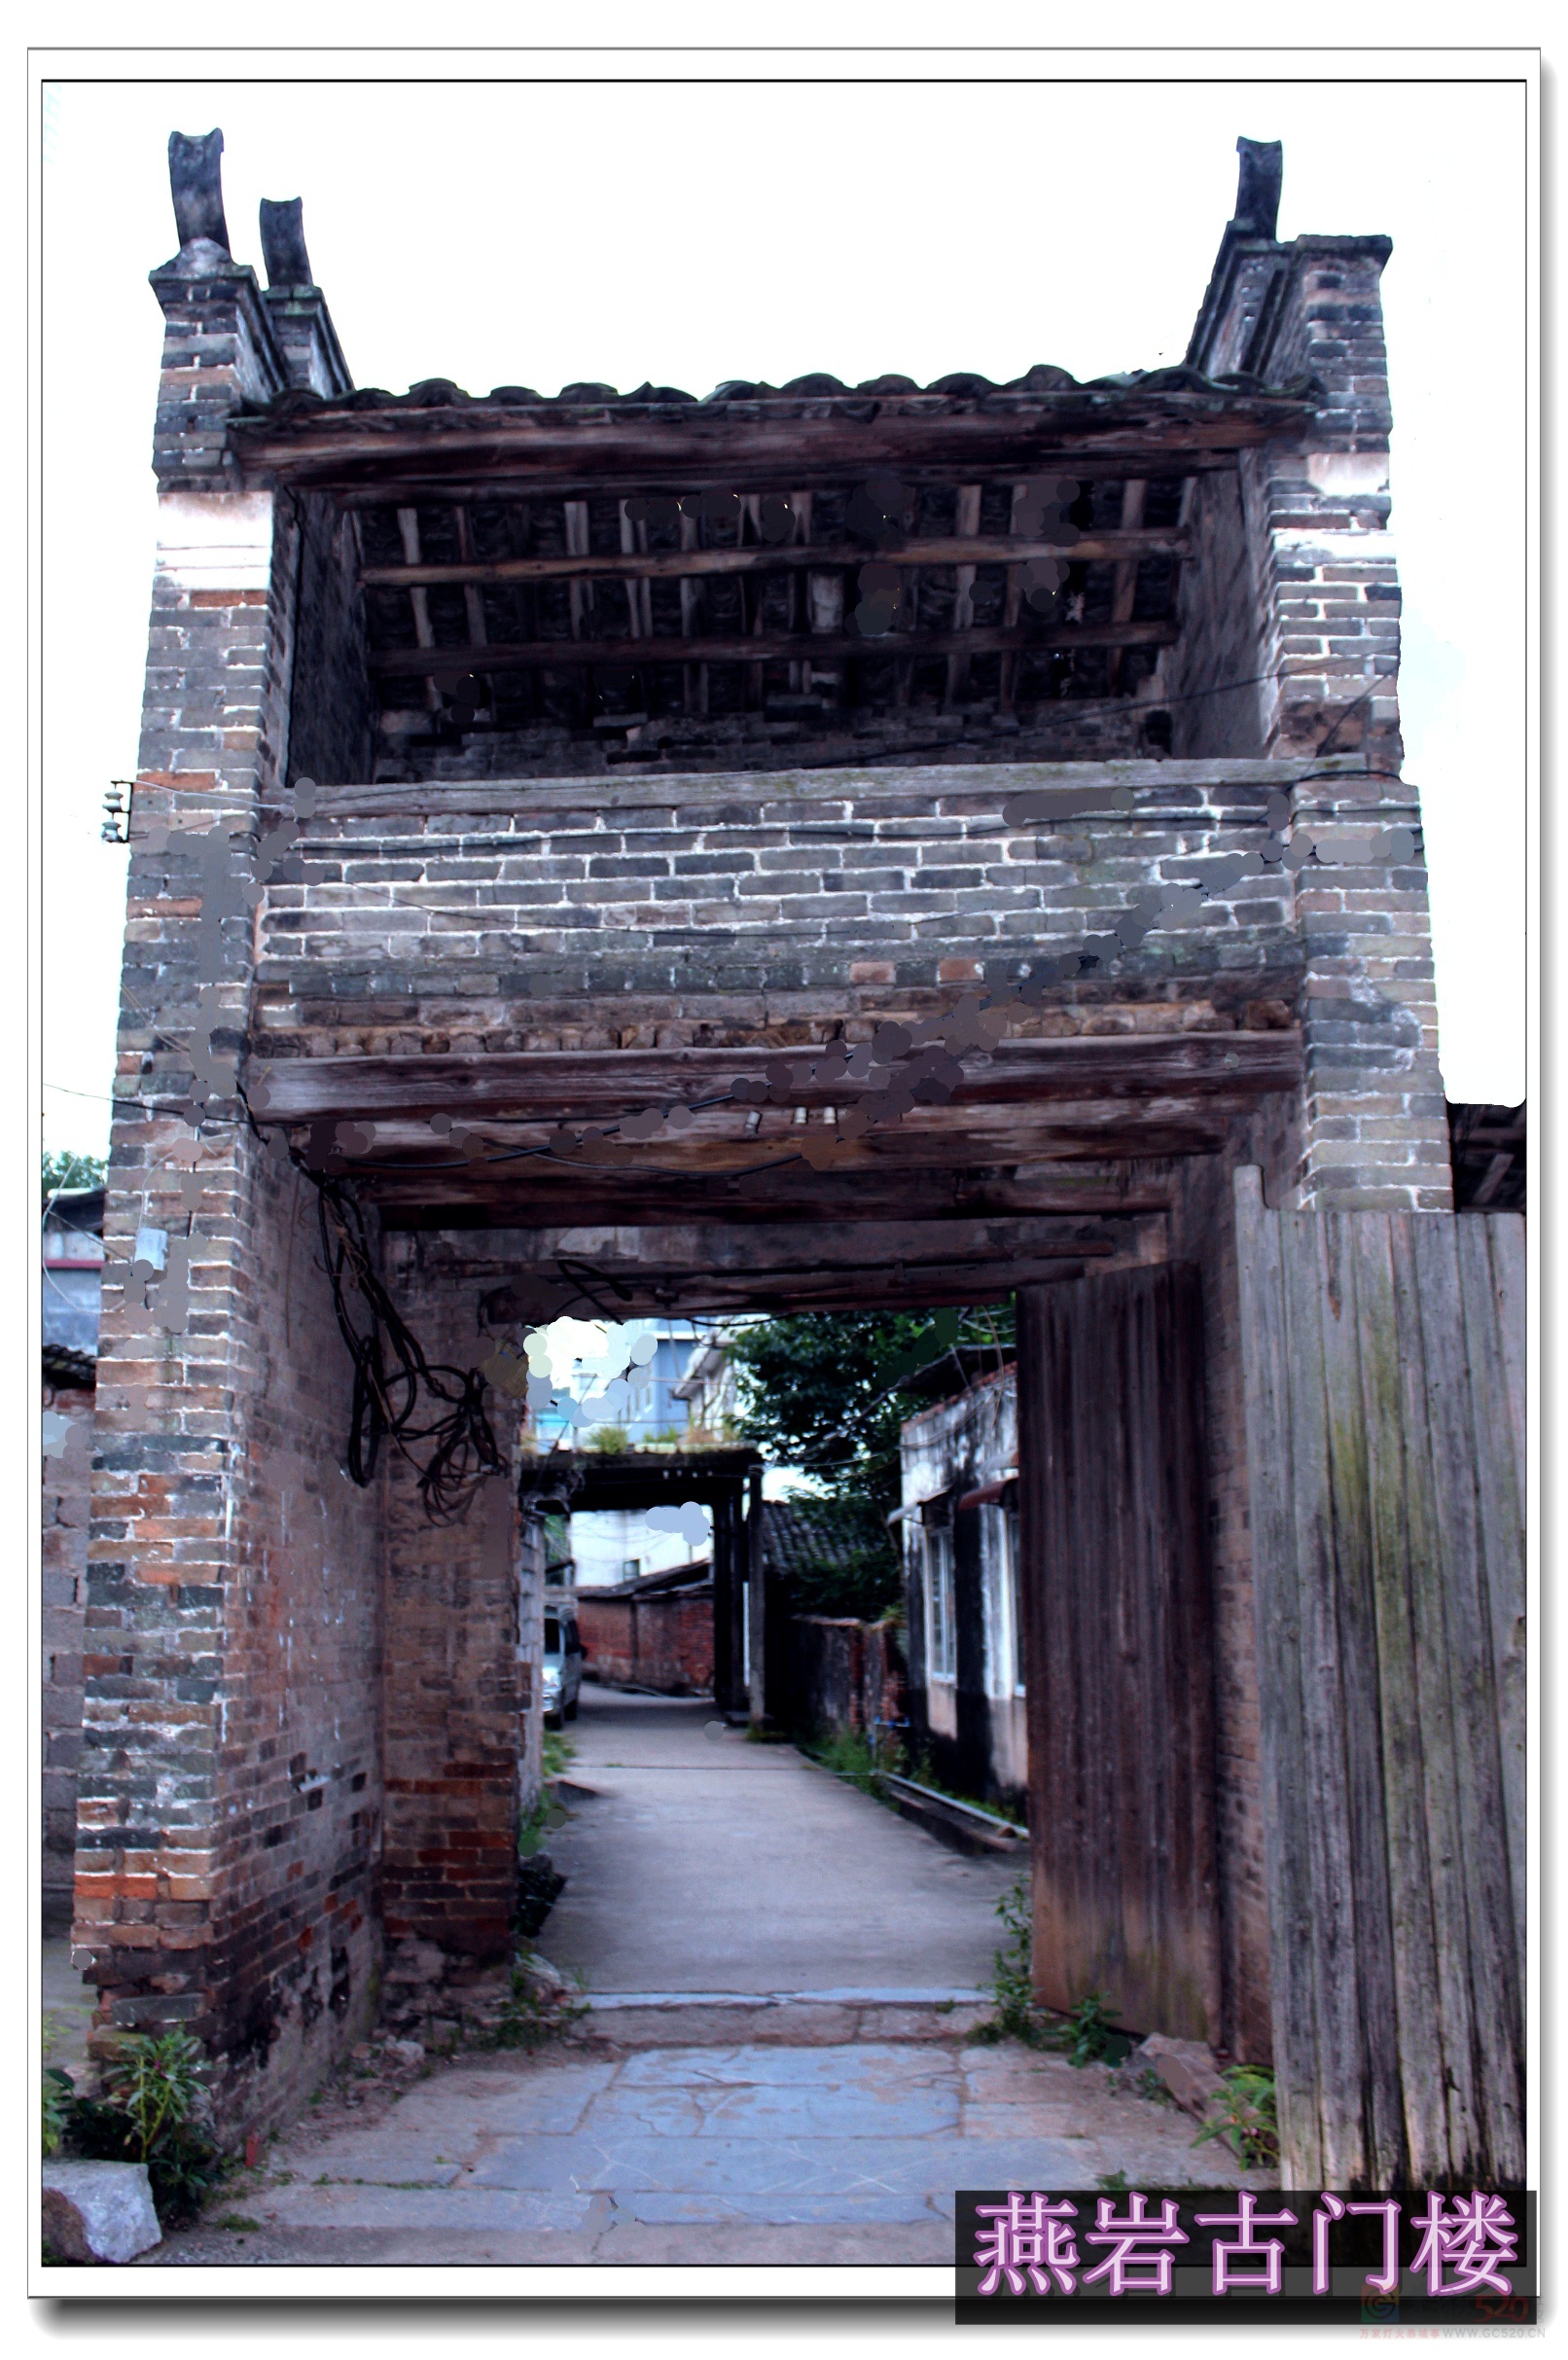 岁月渐渐变老，燕岩河的老浮桥、燕岩村的古建筑你可曾见过963 / 作者:陈爱国 / 帖子ID:291532